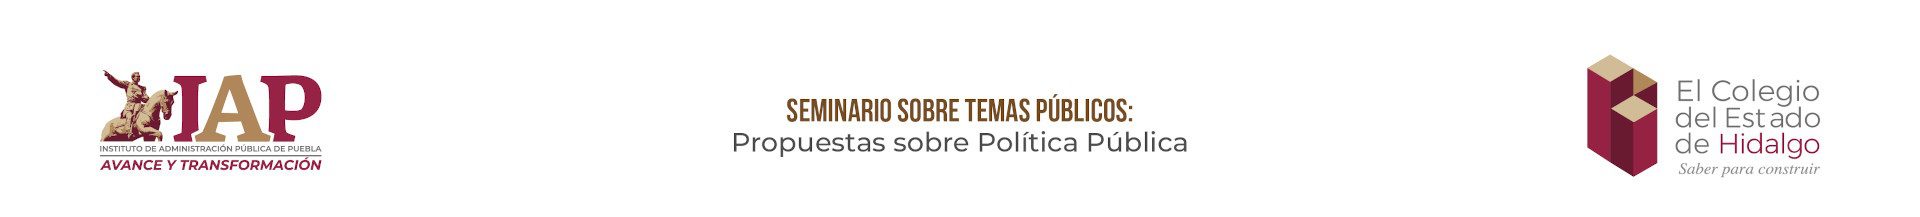 Seminario sobre Temas Públicos: Propuesta sobre Política Pública<br />
